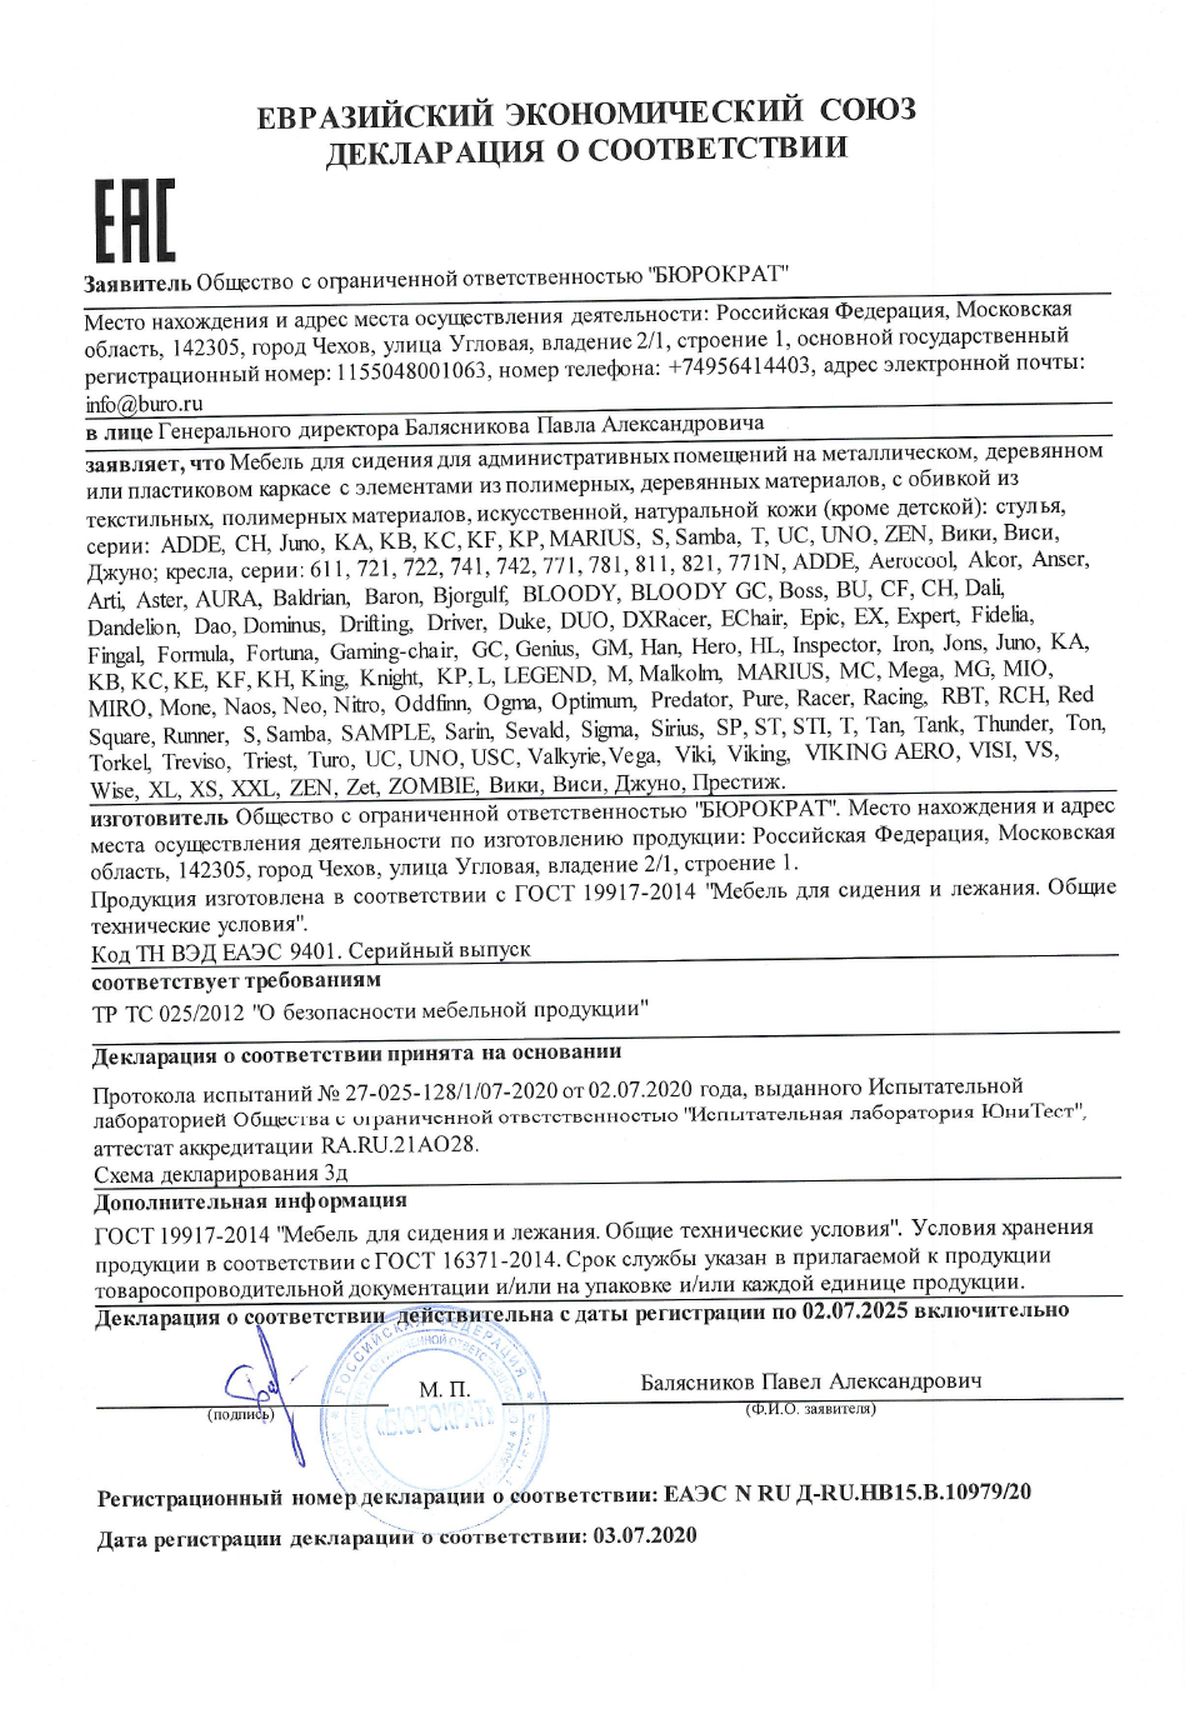 Сертификат соответствия кресла БРАБИКС